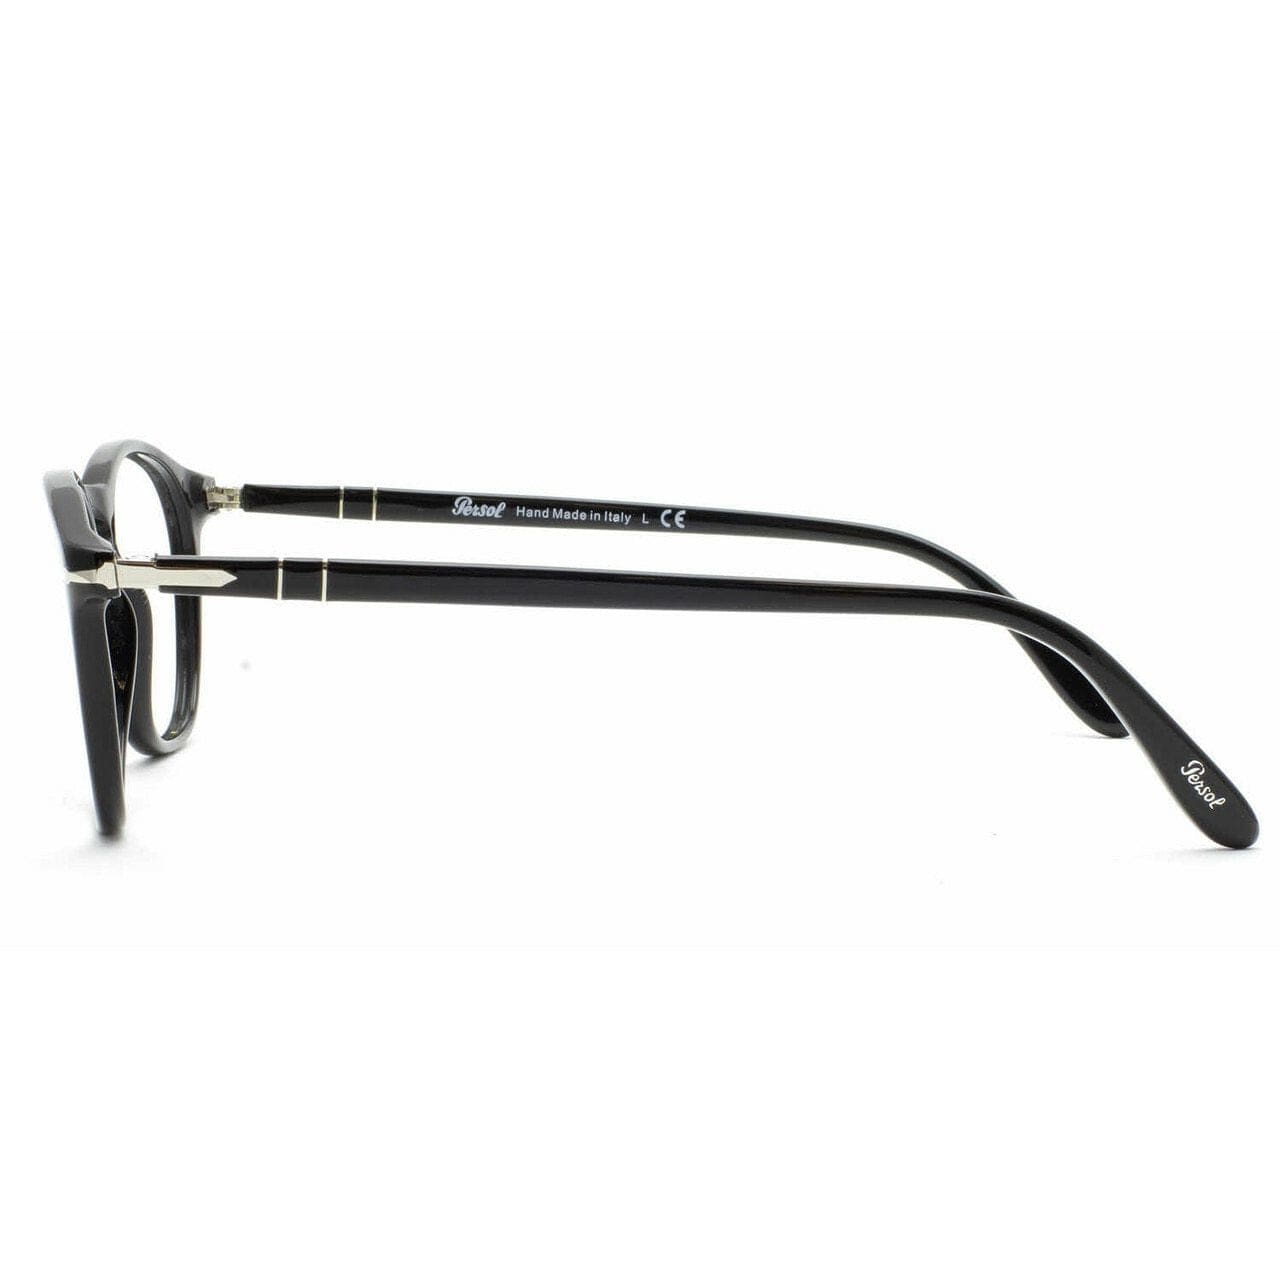 Persol PO3007V Vintage Celebration Unisex Eyeglasses - Rx 